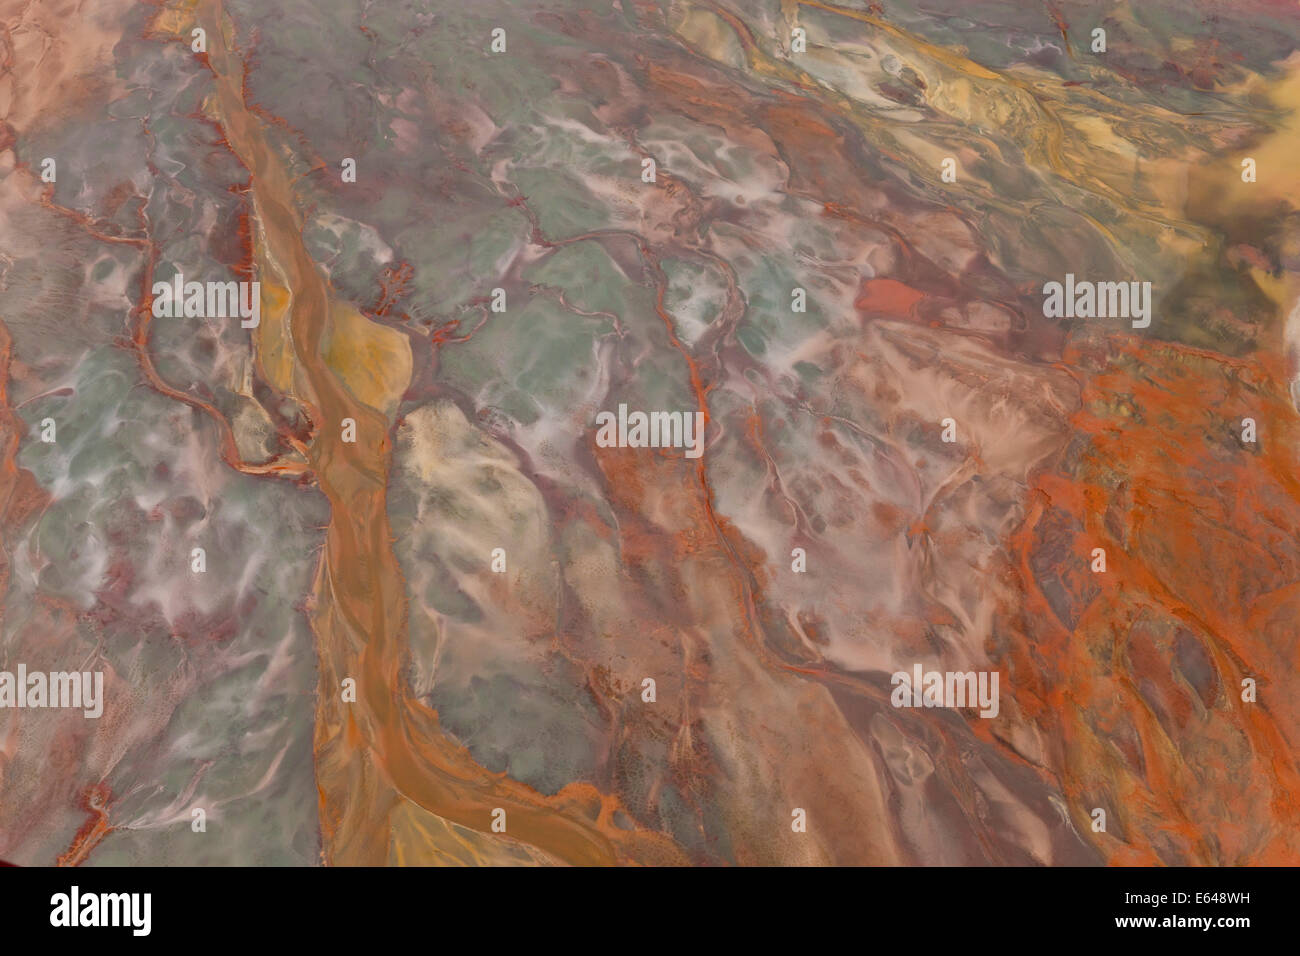 Vue aérienne de minéraux de fer oxydé dans l'eau dans le vieux bassin minier, RÃ-o Tinto. La province de Huelva, Espagne Banque D'Images